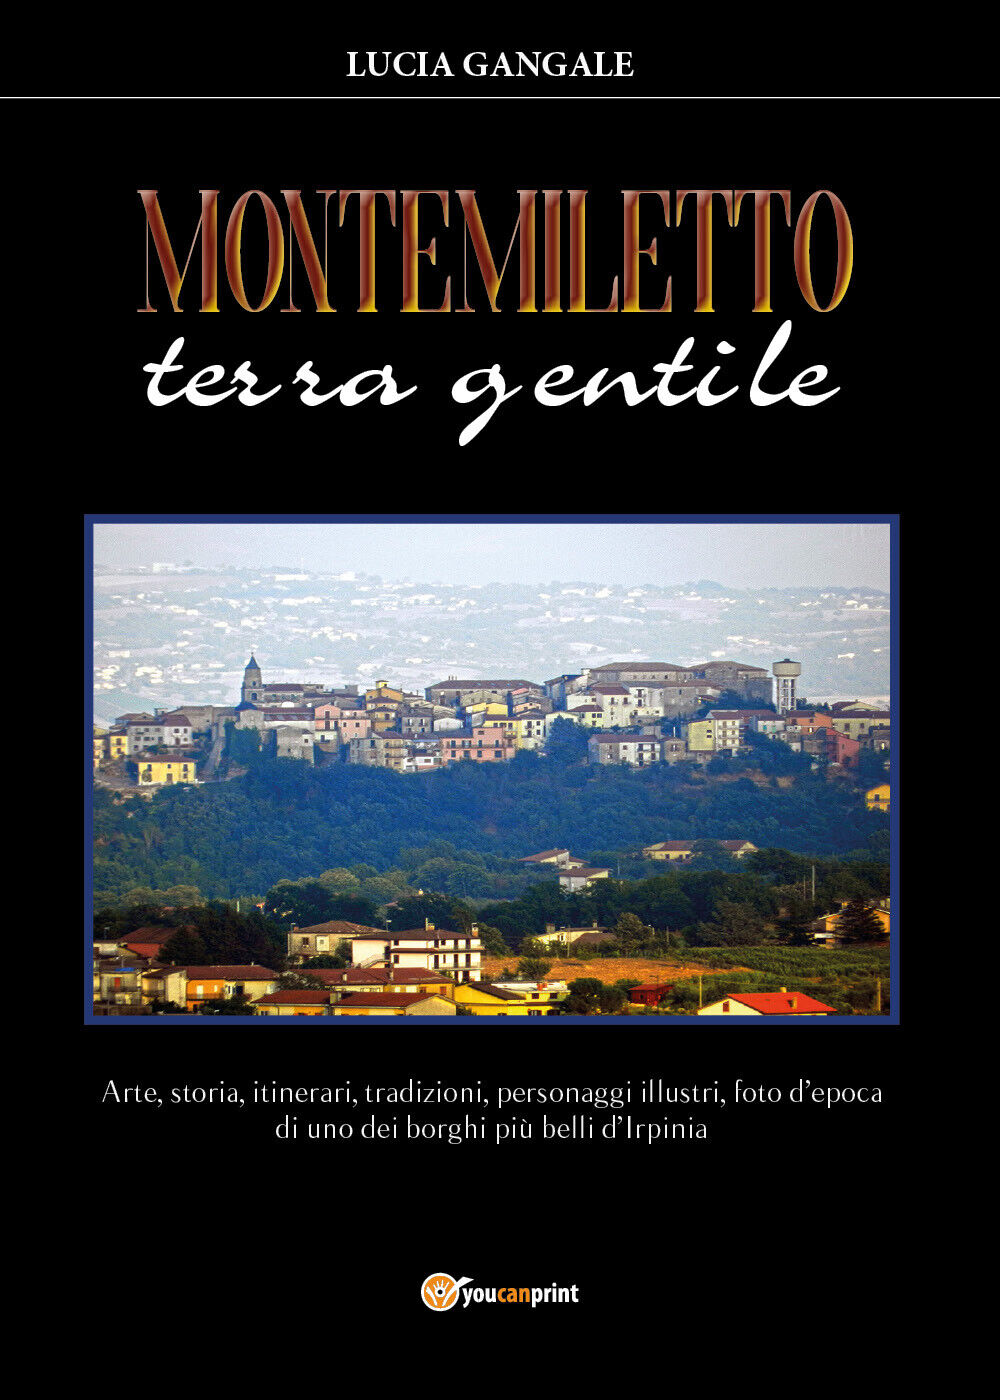 Montemiletto terra gentile di Lucia Gangale, 2020, Youcanprint